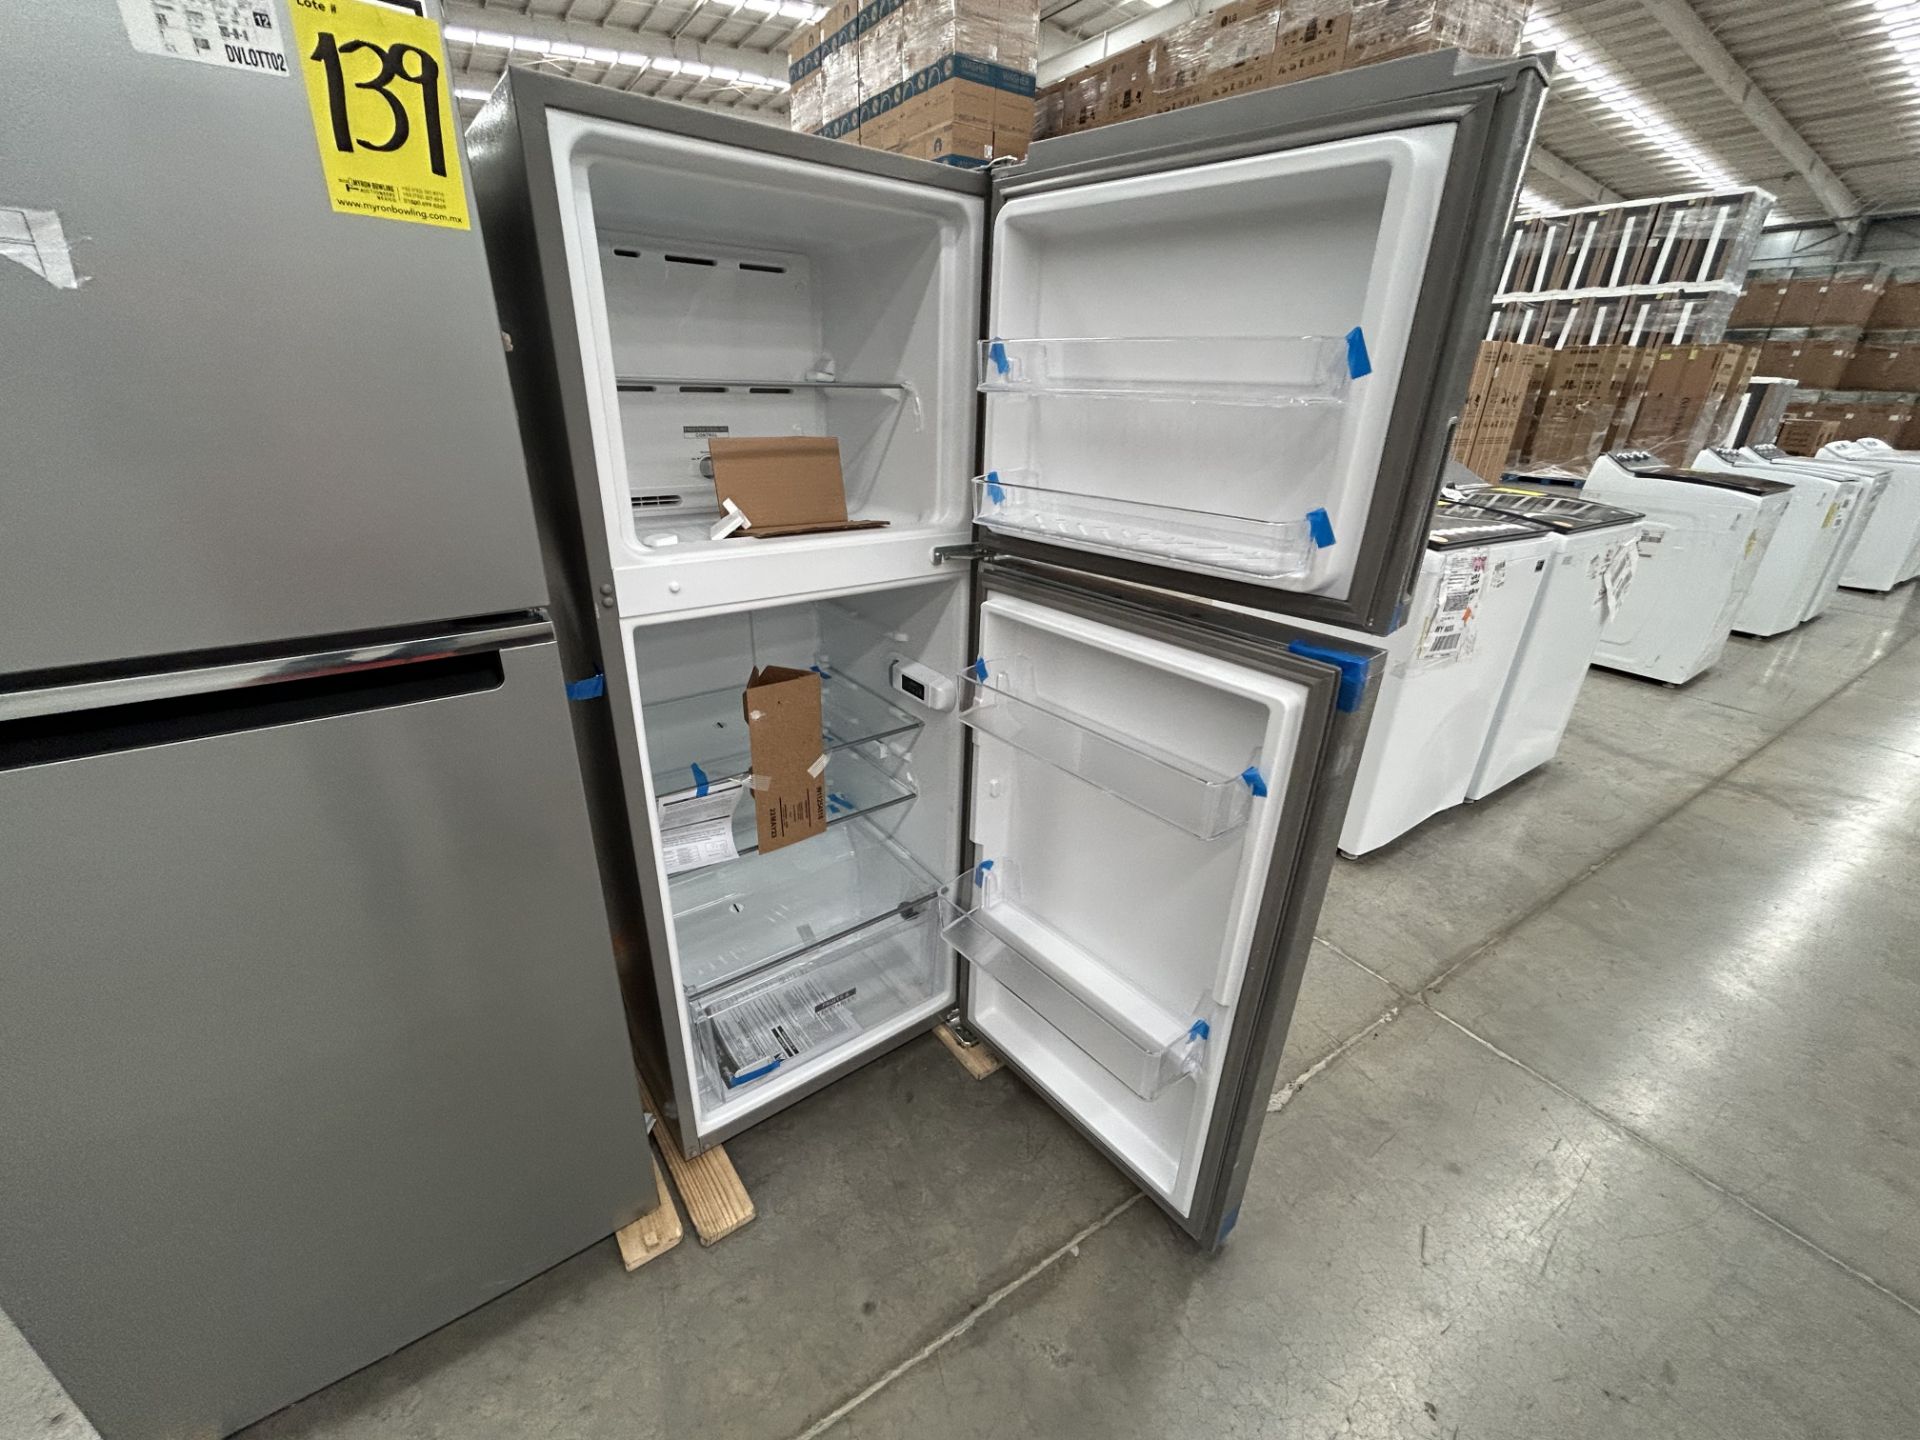 Lote de 2 refrigeradores contiene: 1 refrigerador Marca WHIRPOOL, Modelo WT1230K, Serie 90748, Colo - Image 4 of 6